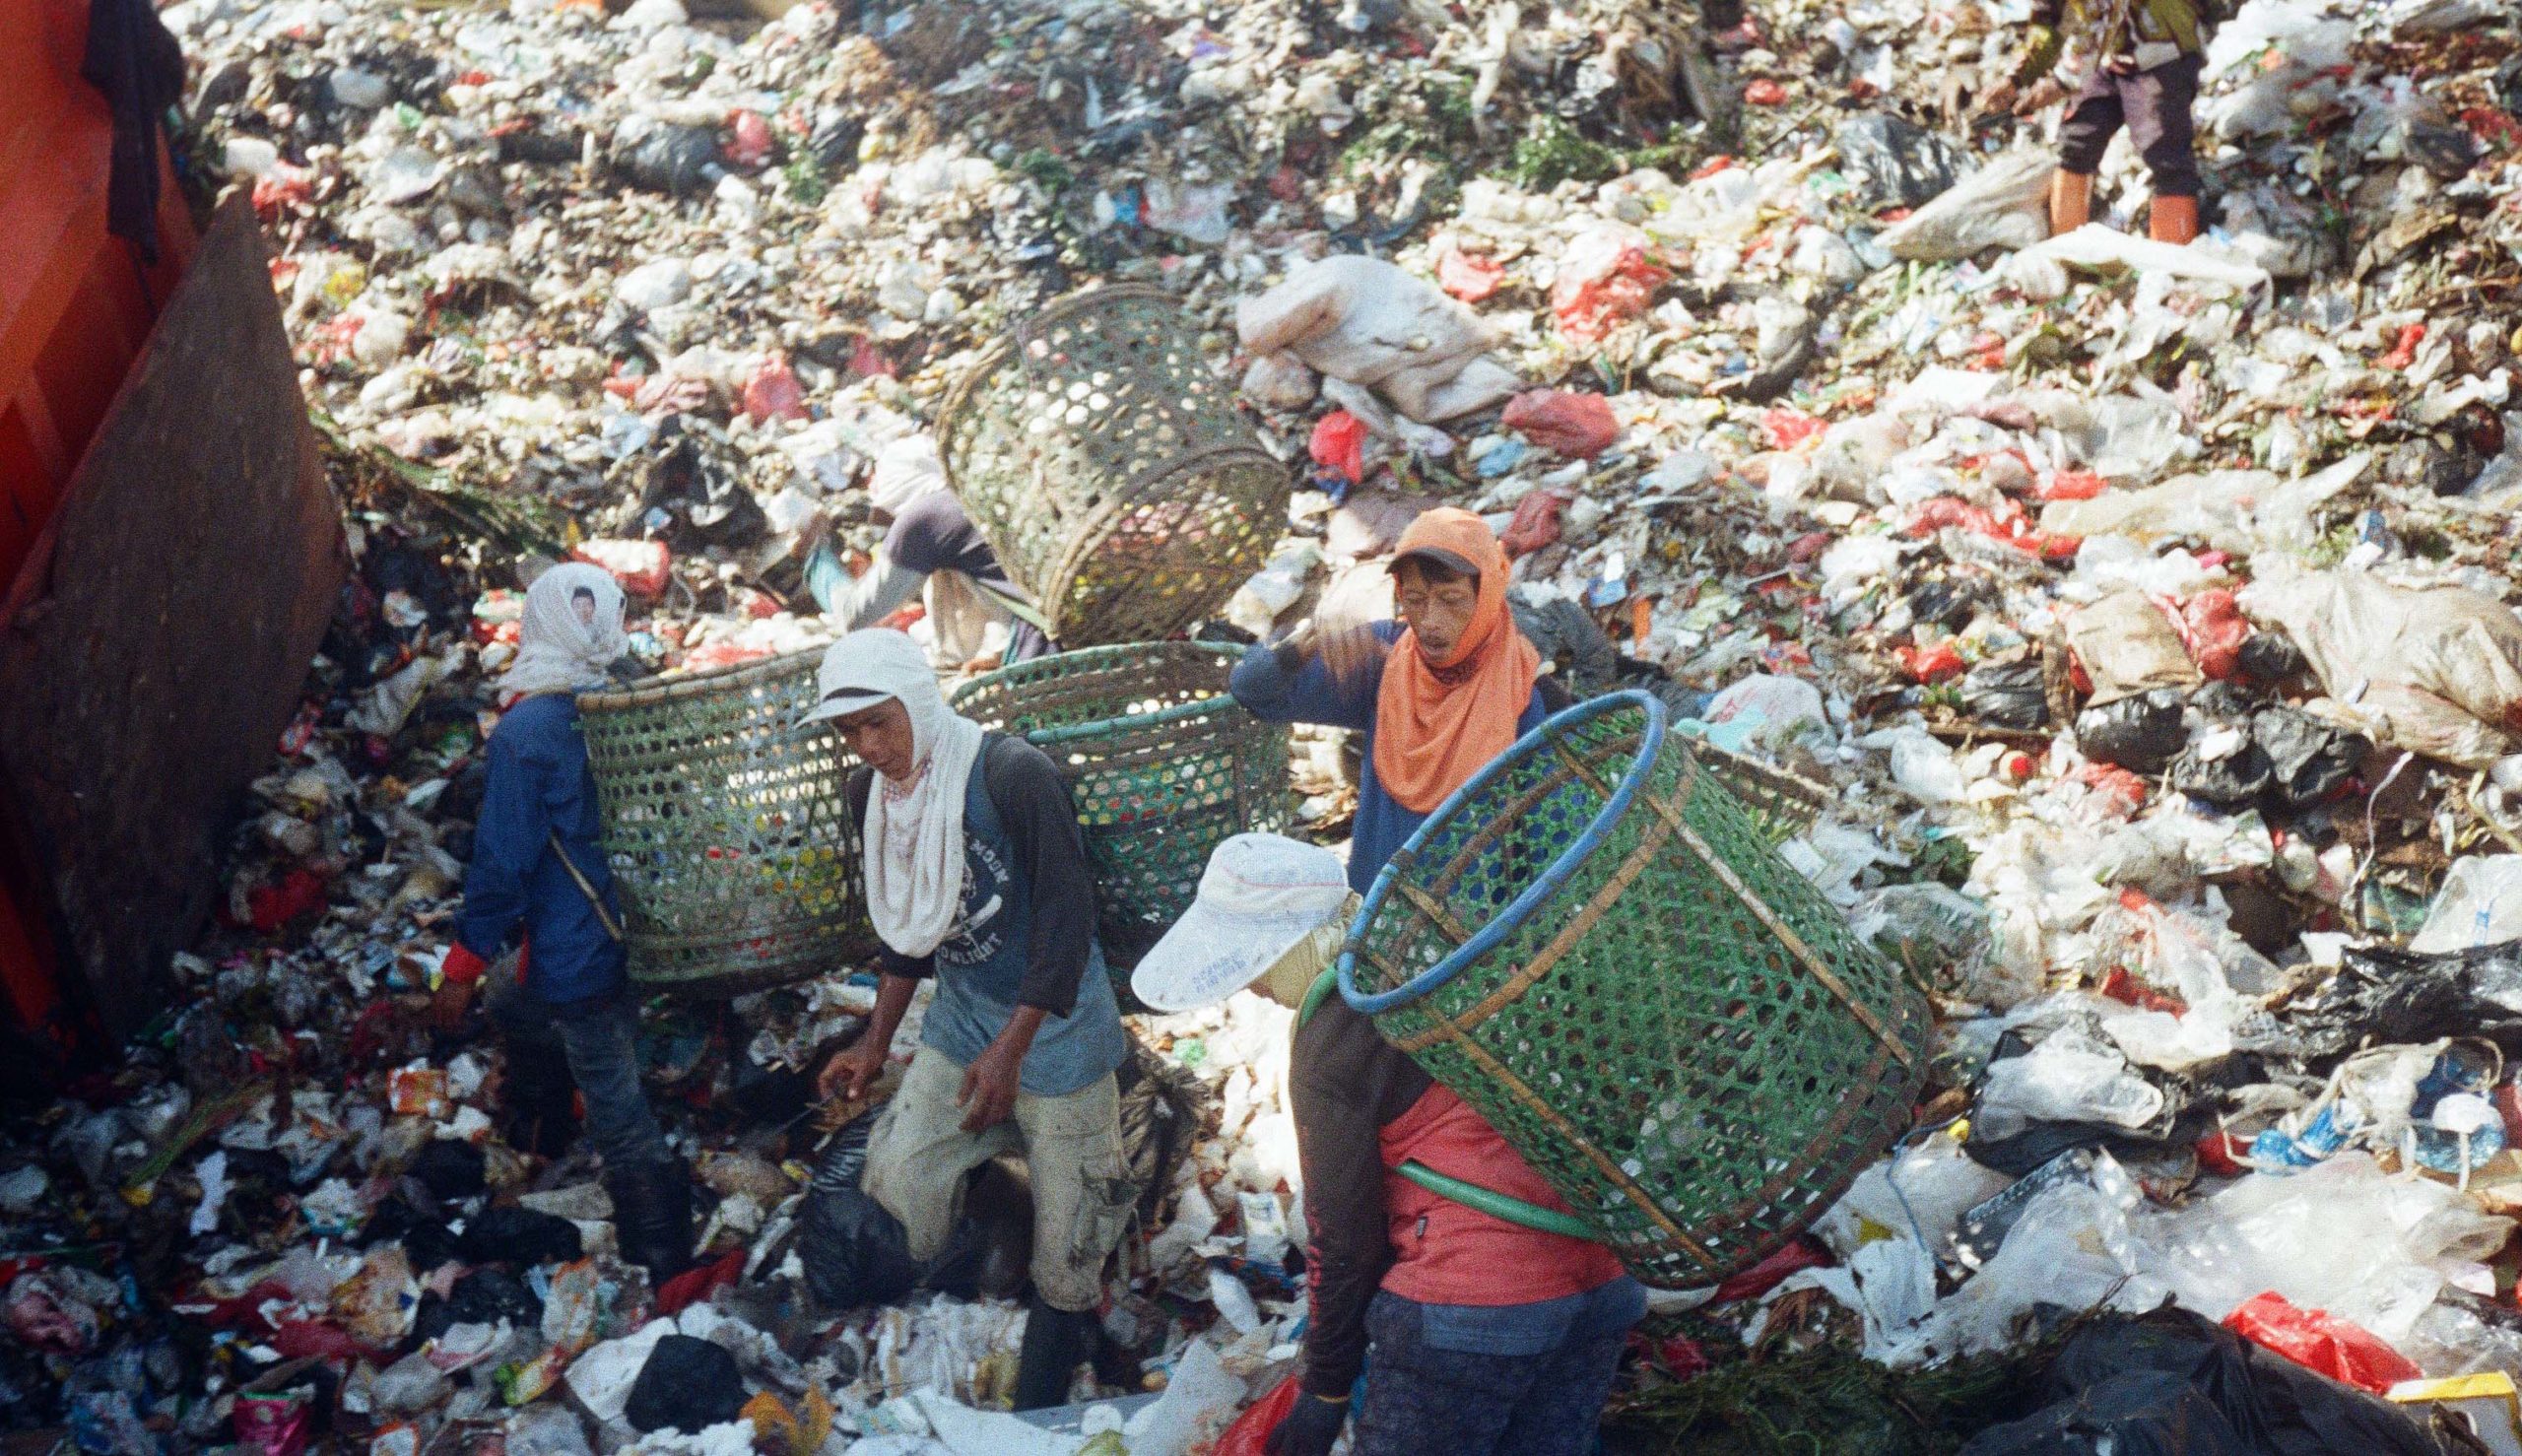 Sampah di tempat pembuangan akhir. Penanganan sampah medis di Indonesia masih buruk hingga membahayakan. Foto: Adi Renaldi/ Mongabay Indonesia 